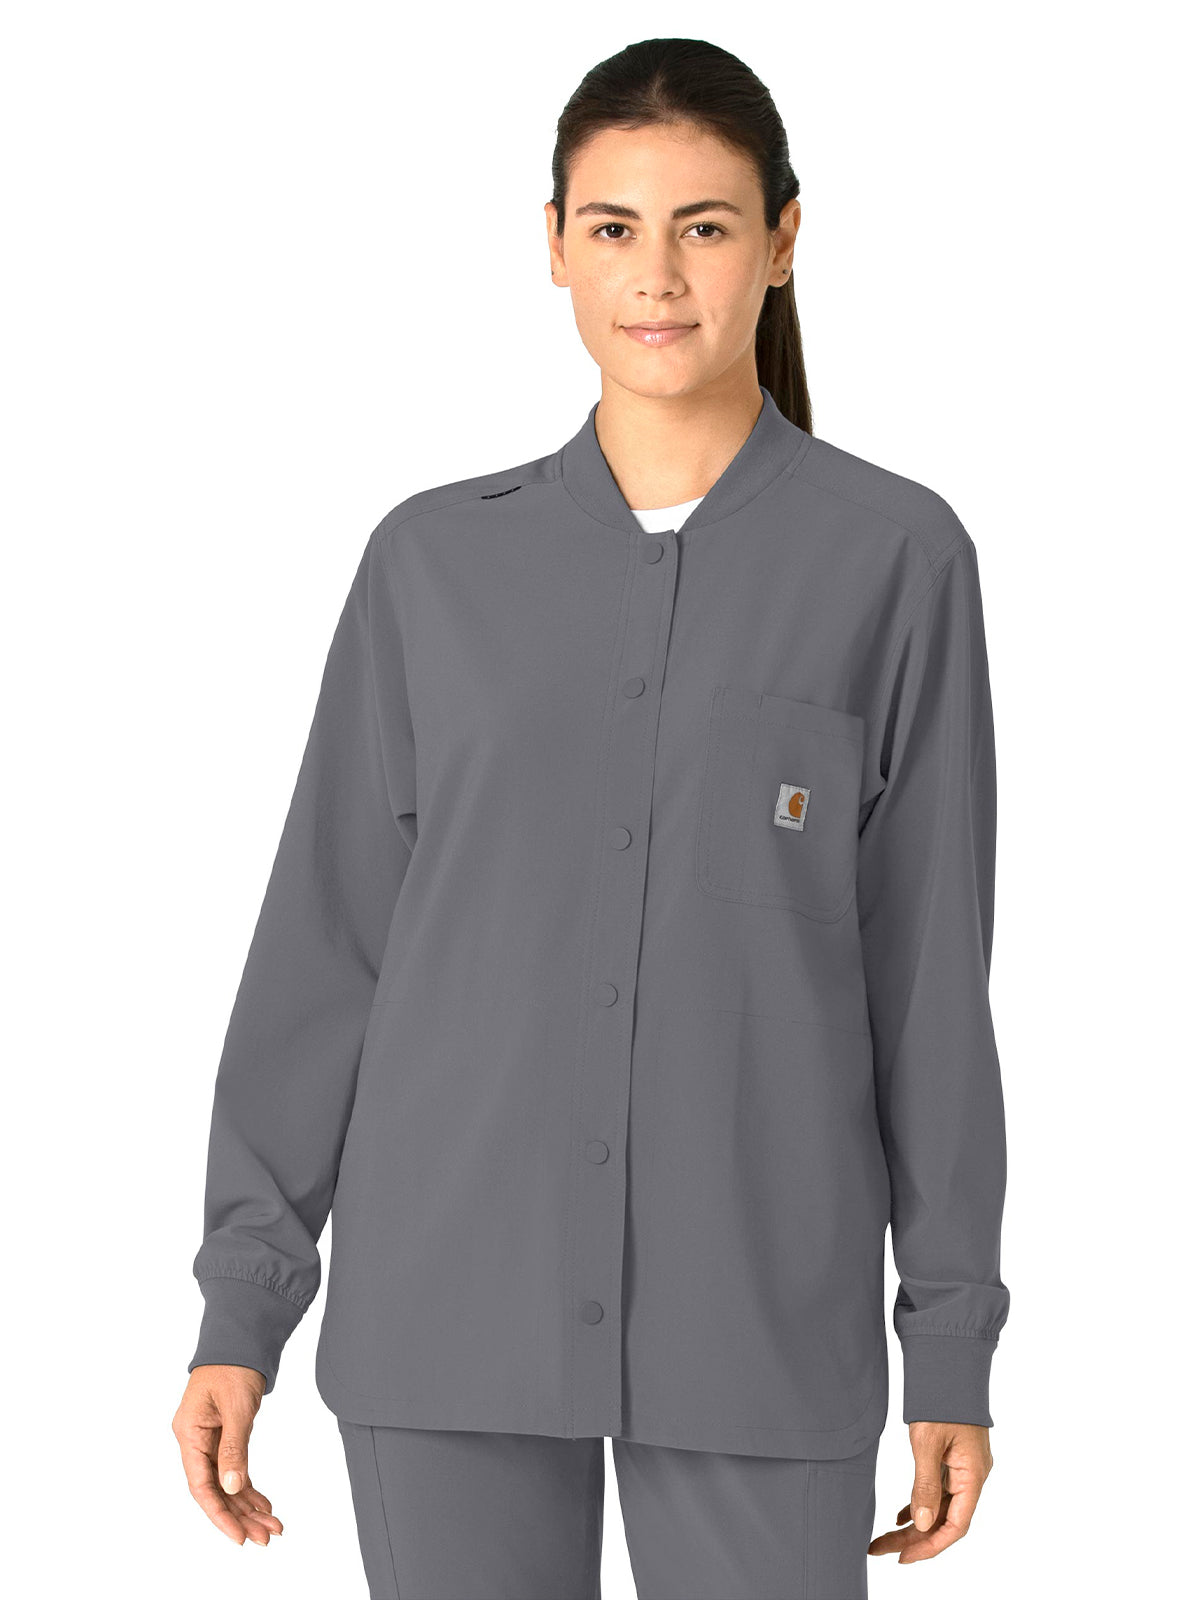 Women's Modern Fit Shirt Jacket - C82210 - Pewter